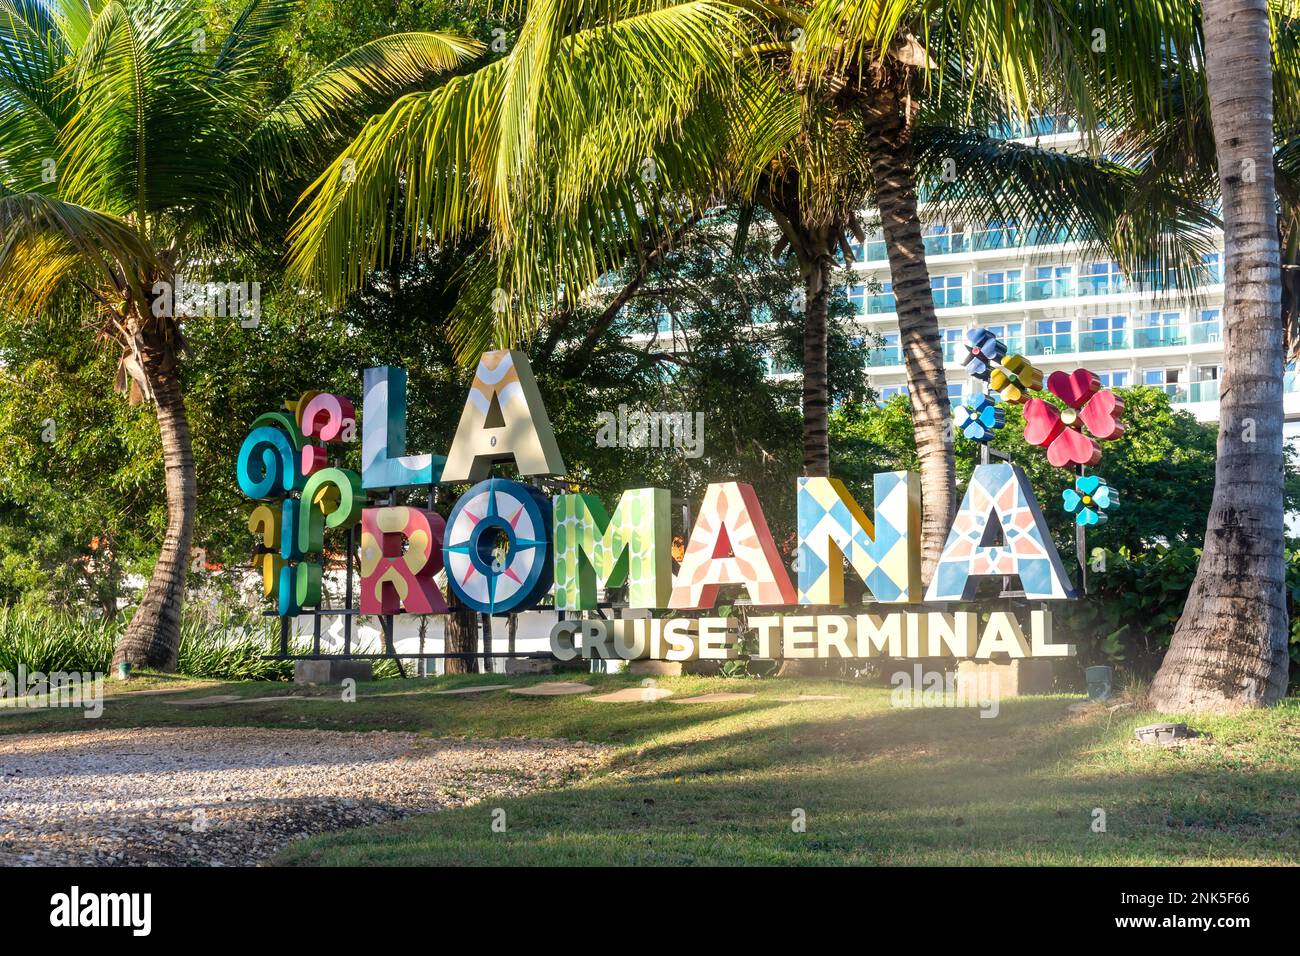 Panneau de bienvenue au terminal de croisière la Romana, la Romana, République dominicaine (Republica Dominicana), grandes Antilles, Caraïbes Banque D'Images